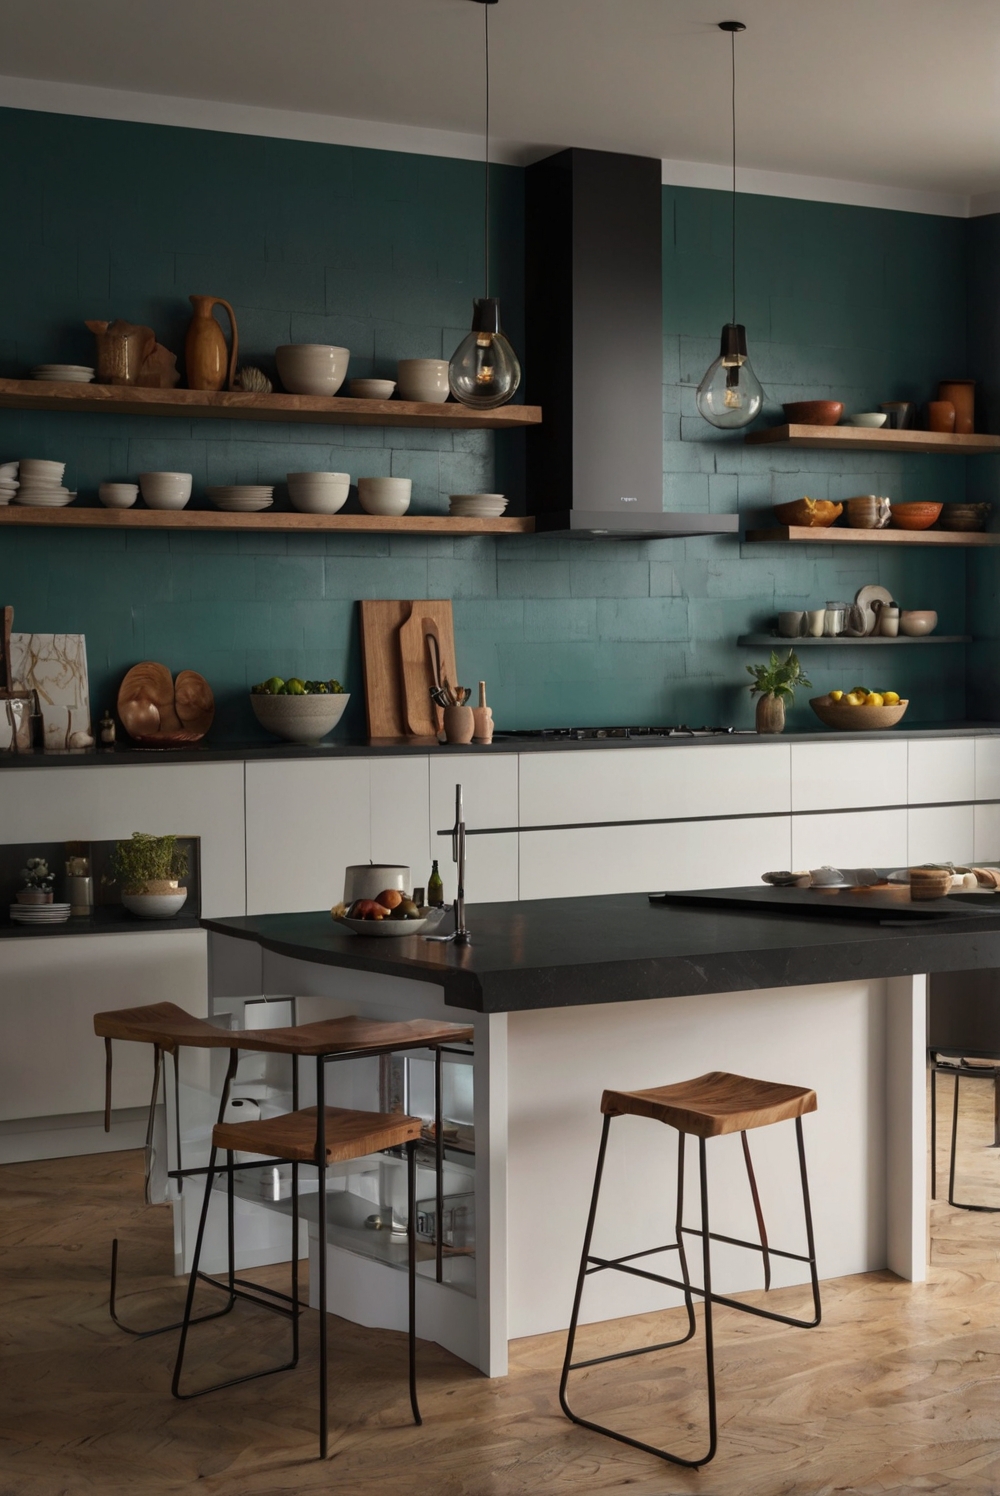 minimalist kitchen design, modern kitchen decor, colorful kitchen accents, minimalist kitchen ideas